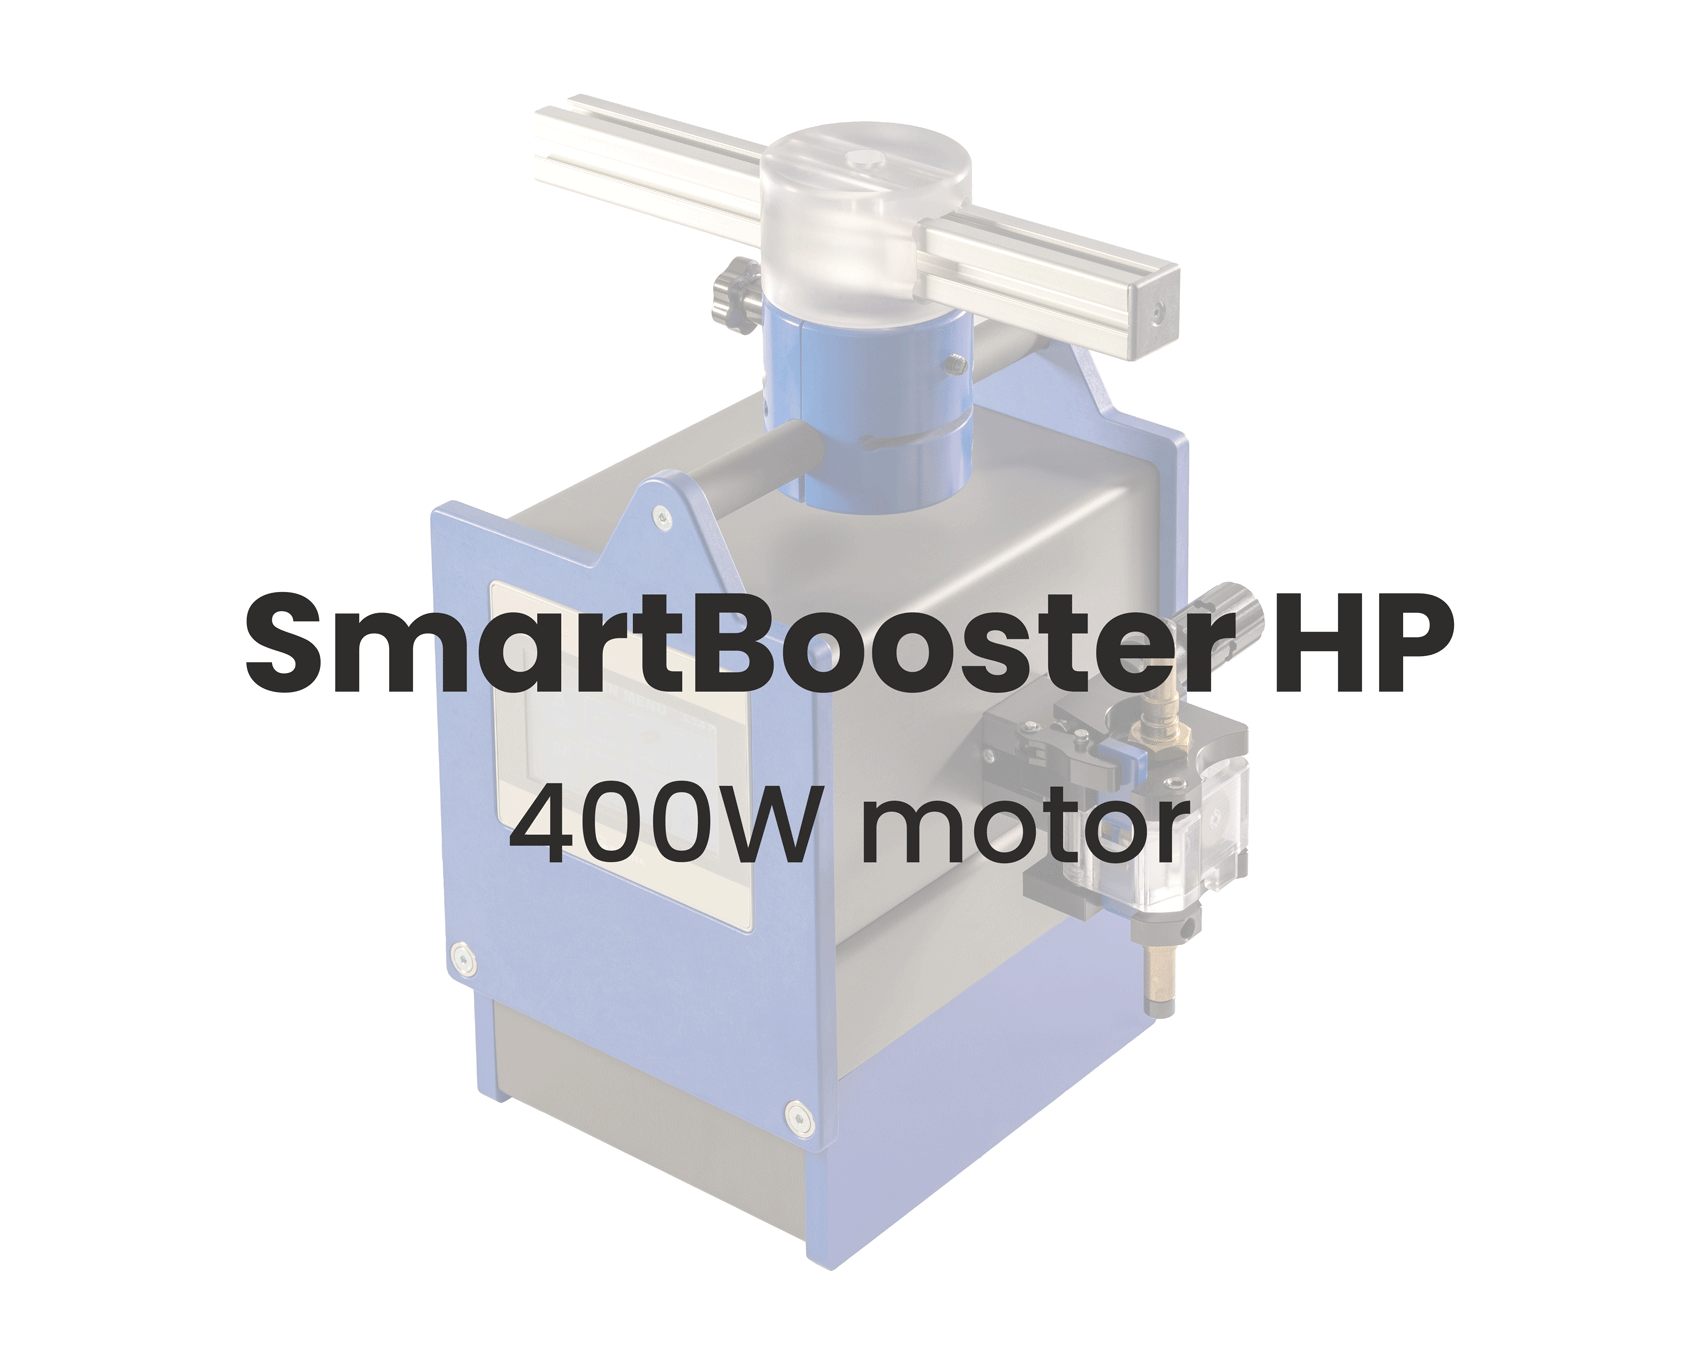 SmartBooster HP 400W motor